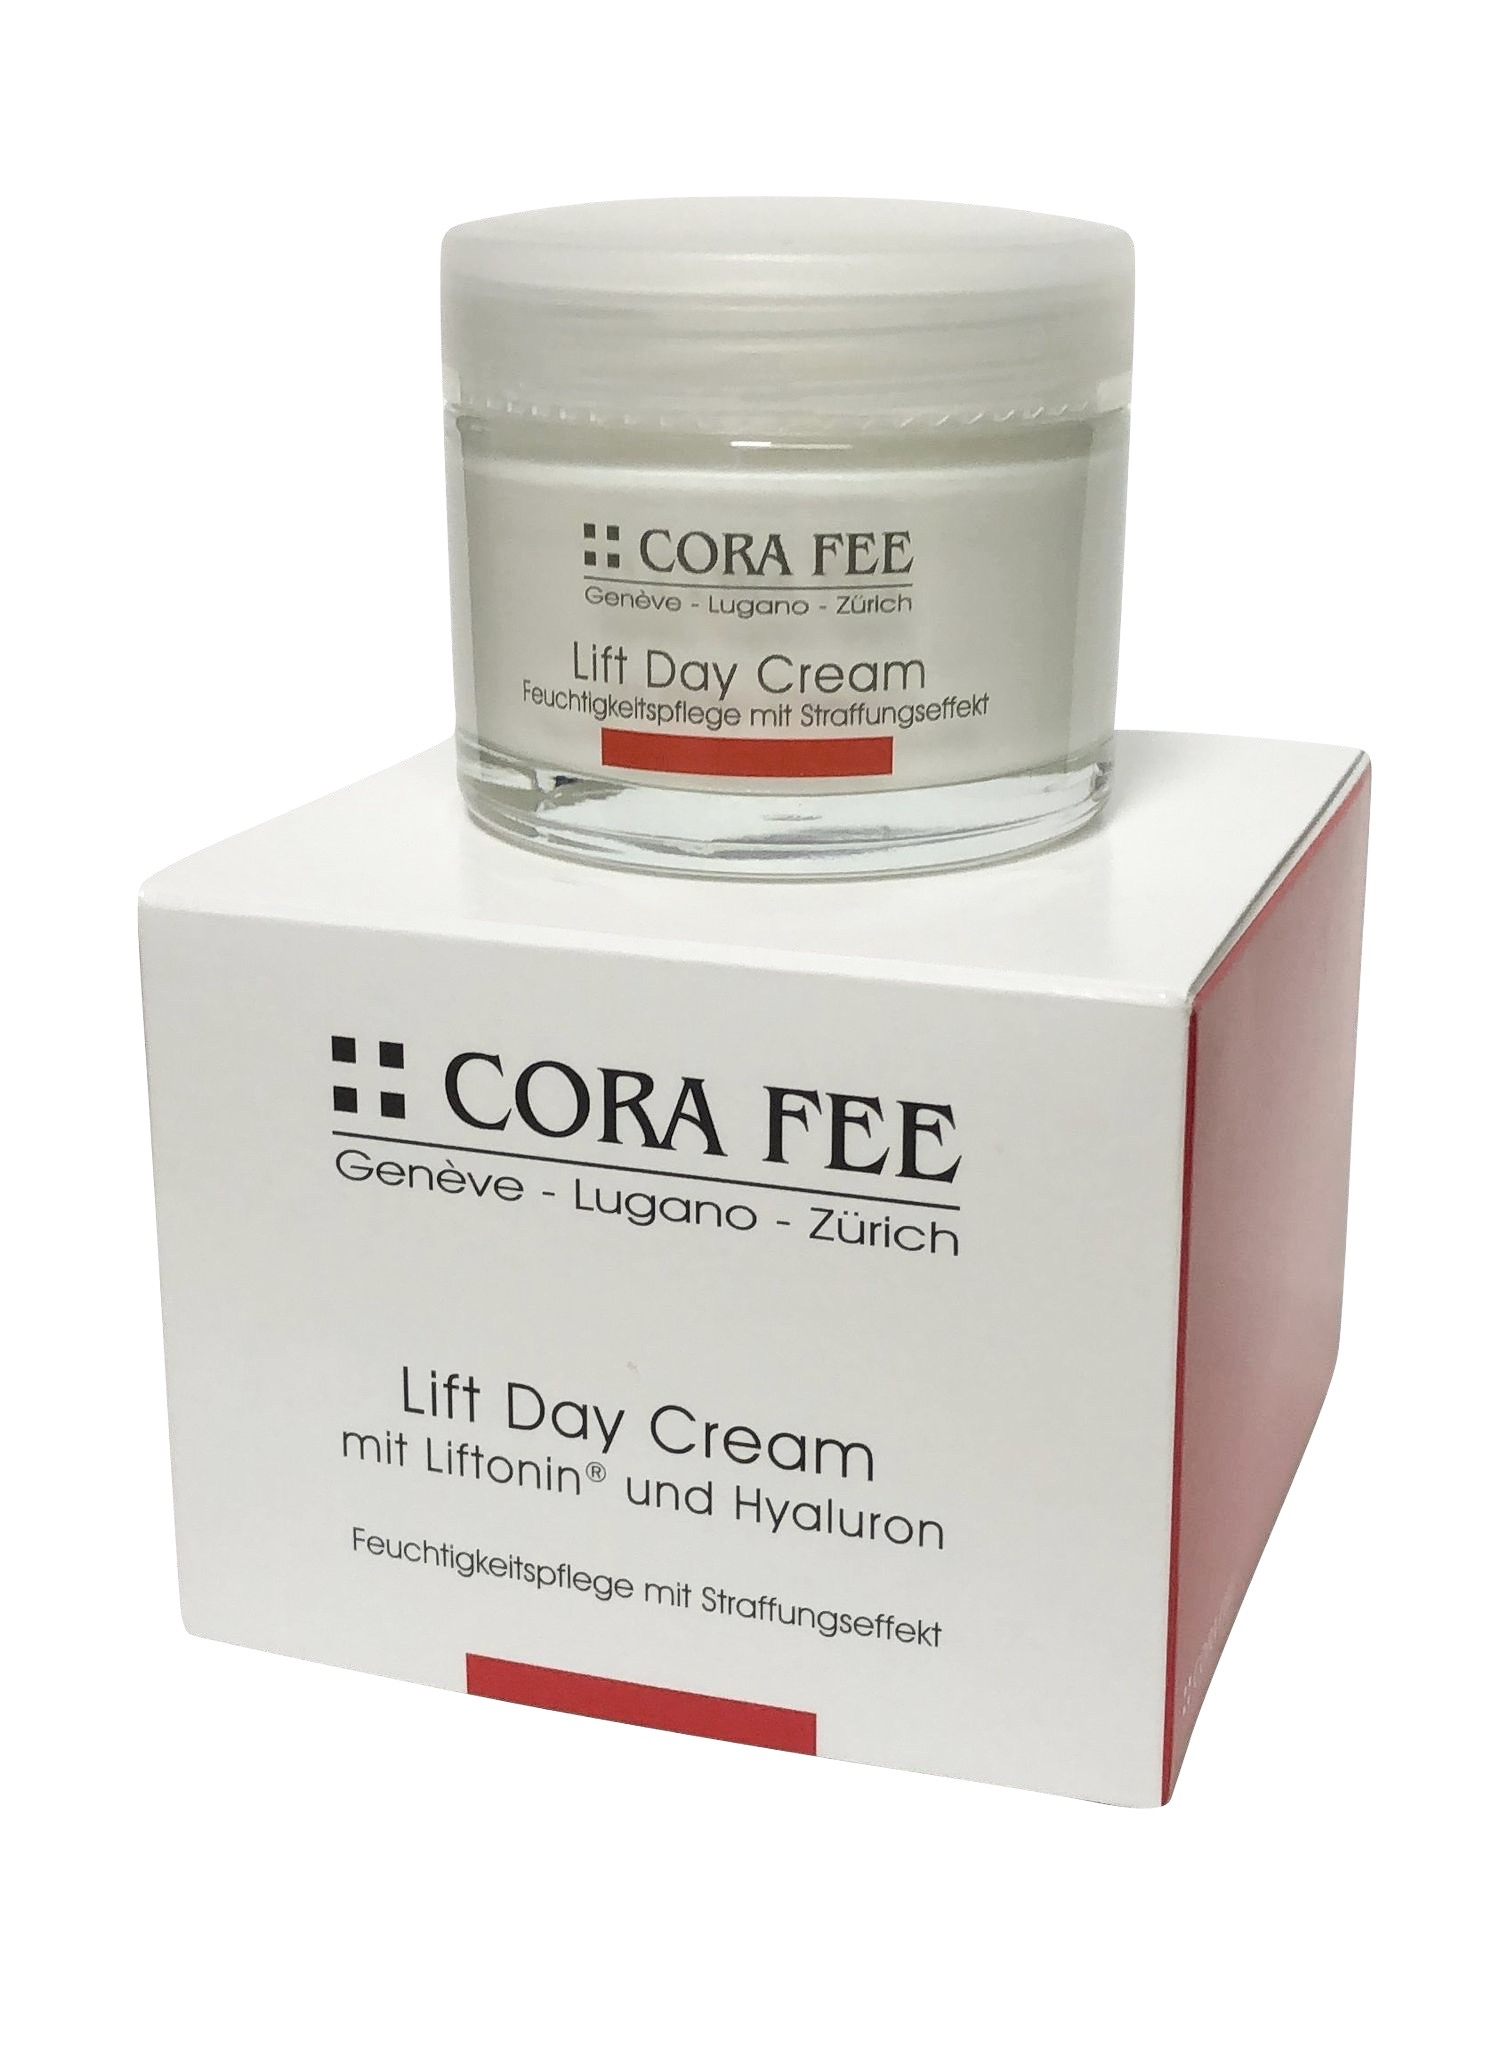 Cora Fee Lift Day Cream mit Liftonin und Hyaluron 50 ml